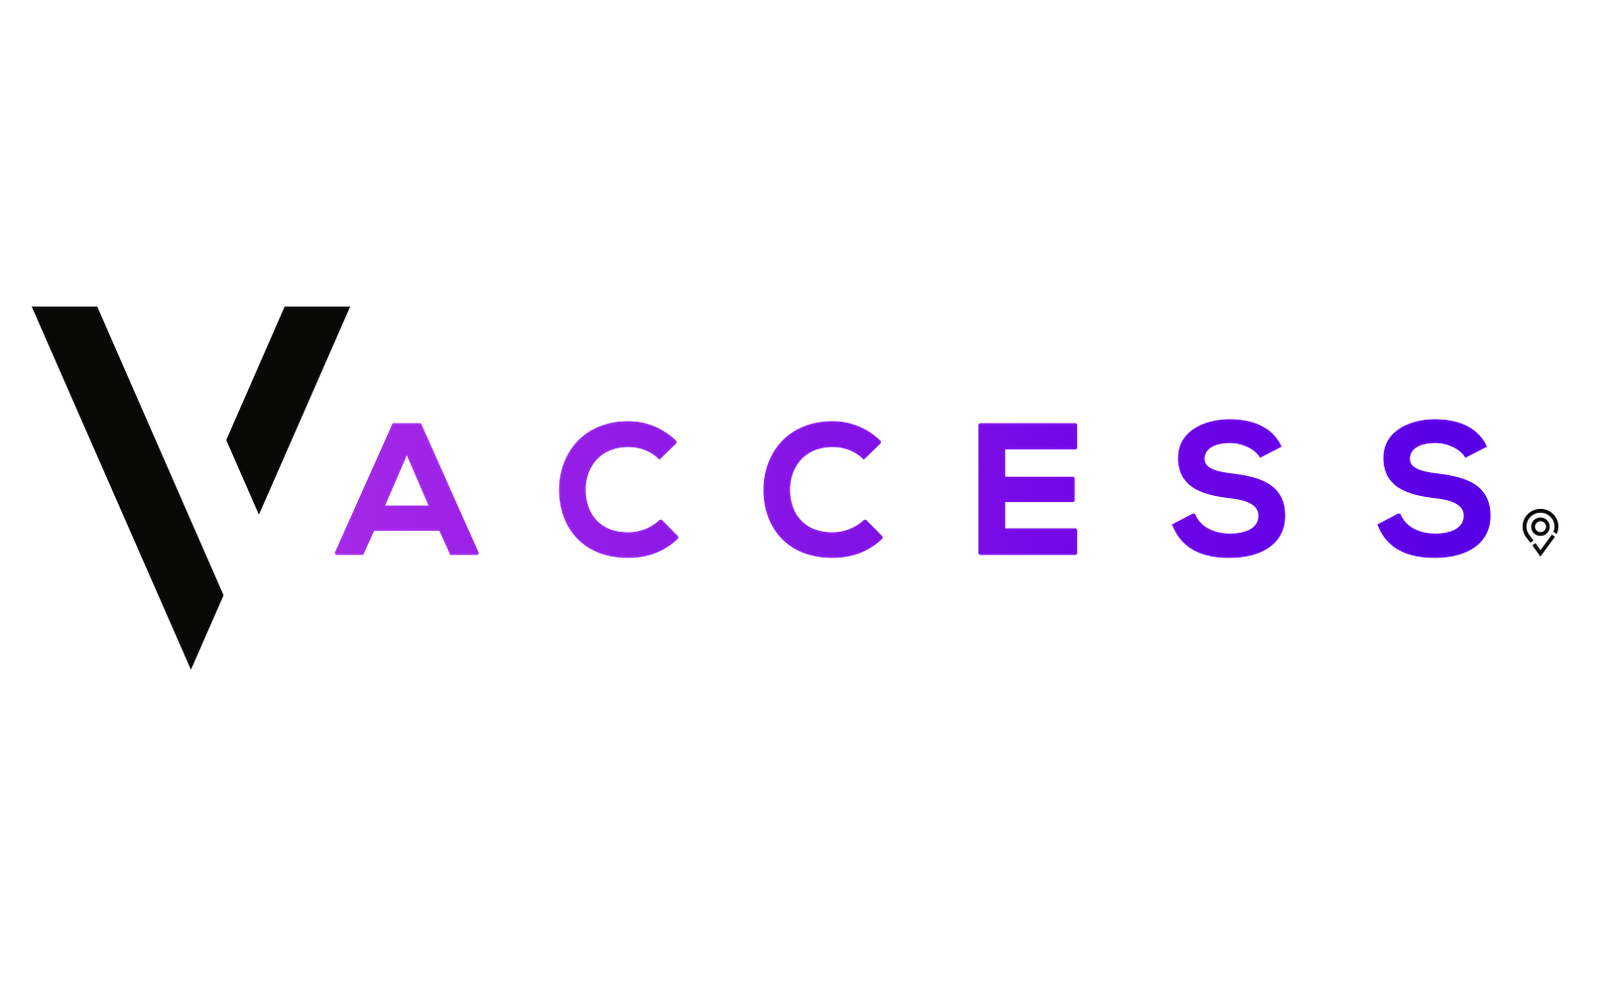 Venues Access